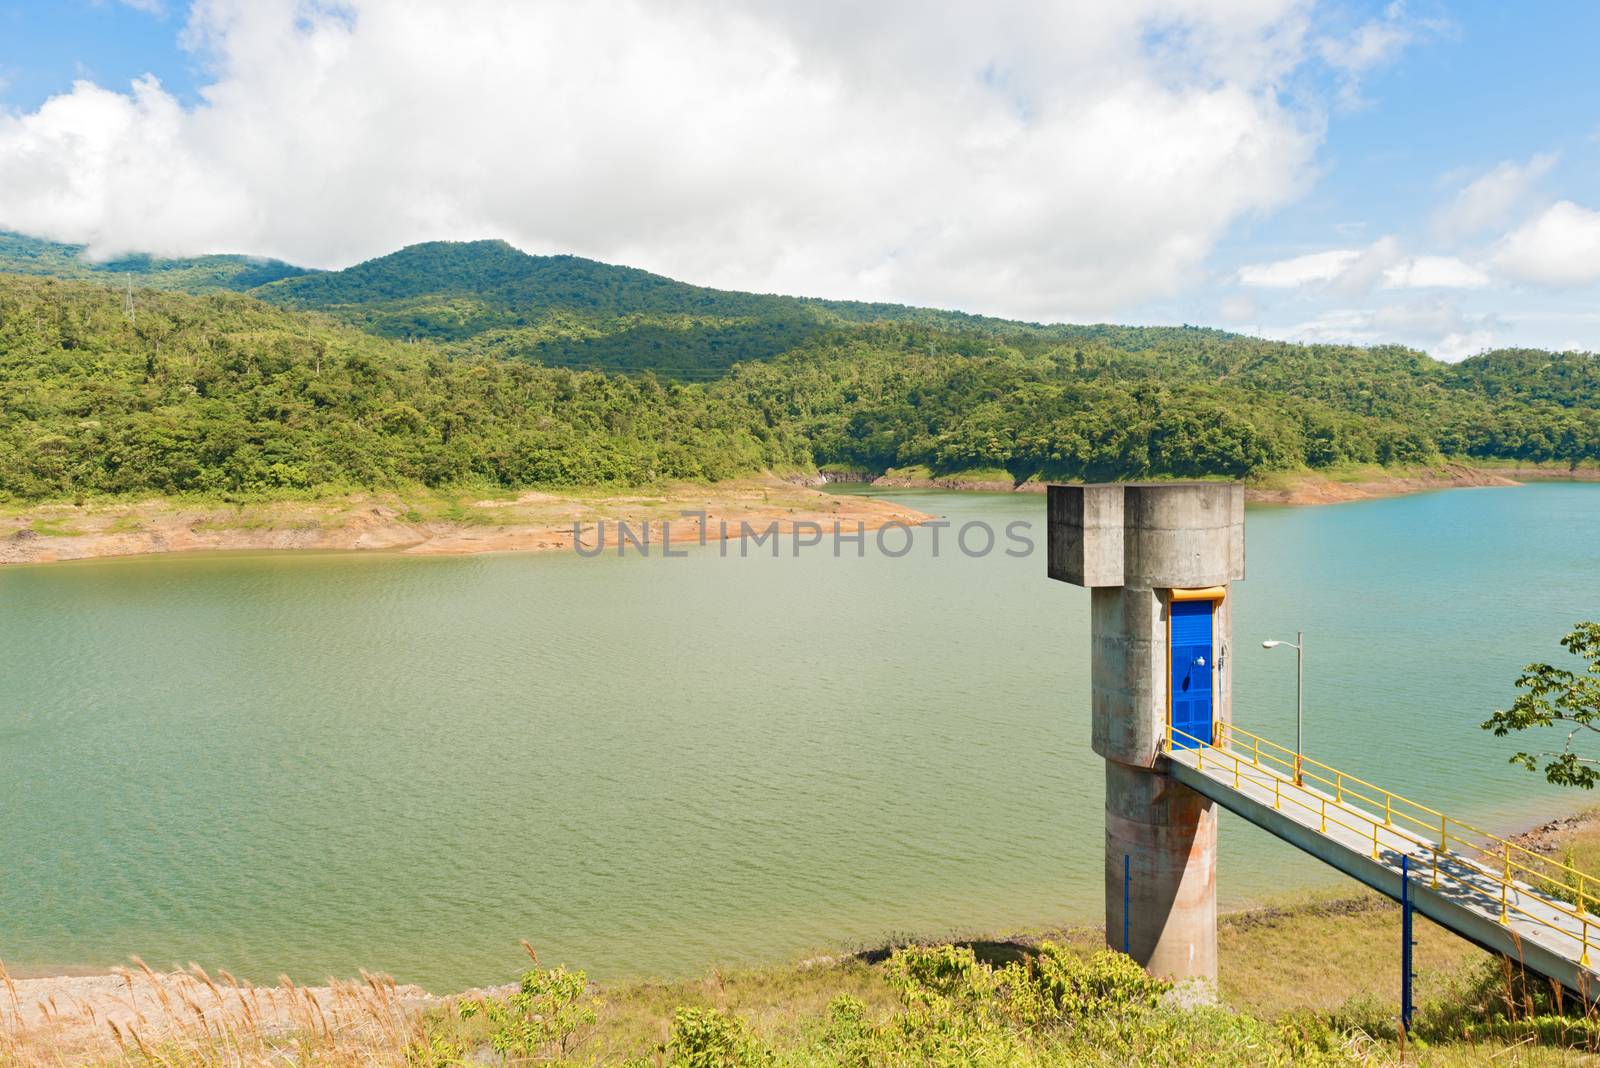 River Brazo De Hornito near Fortuna Dam in Panama on January 4, 2014.